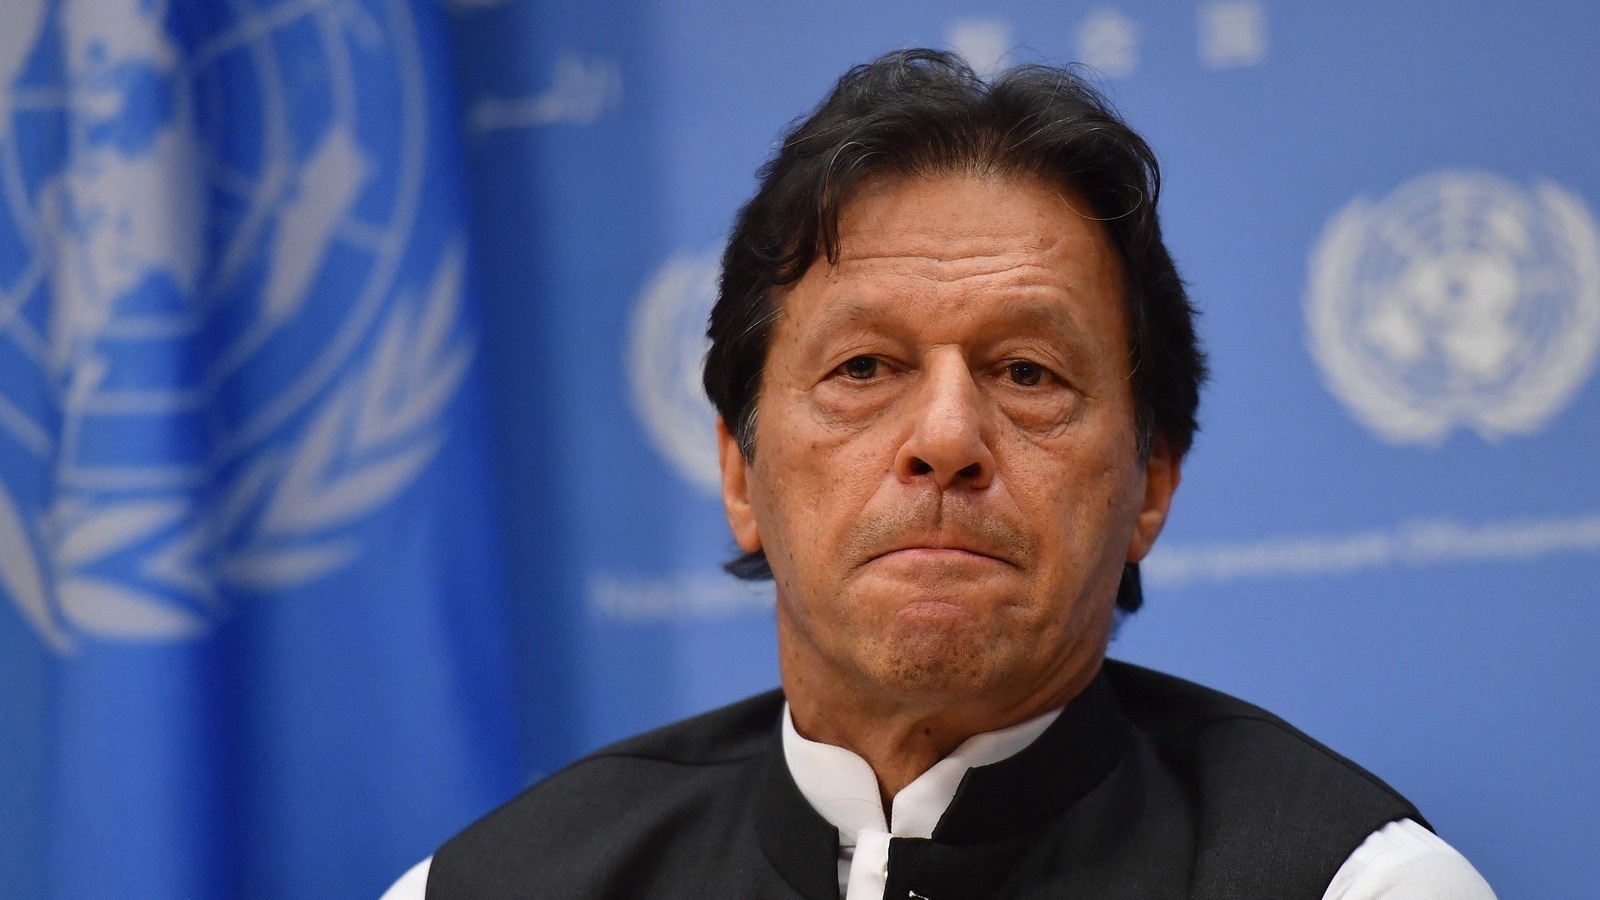 इमरान खान की रिहाई पर मंत्री मरियम औरंगजेब ने जजों को दी 'धमकी', कहा- किसी का नहीं बचेगा...- On the release of Imran Khan, Minister Maryam Aurangzeb 'threatened' the judges, said - no one will be spared...